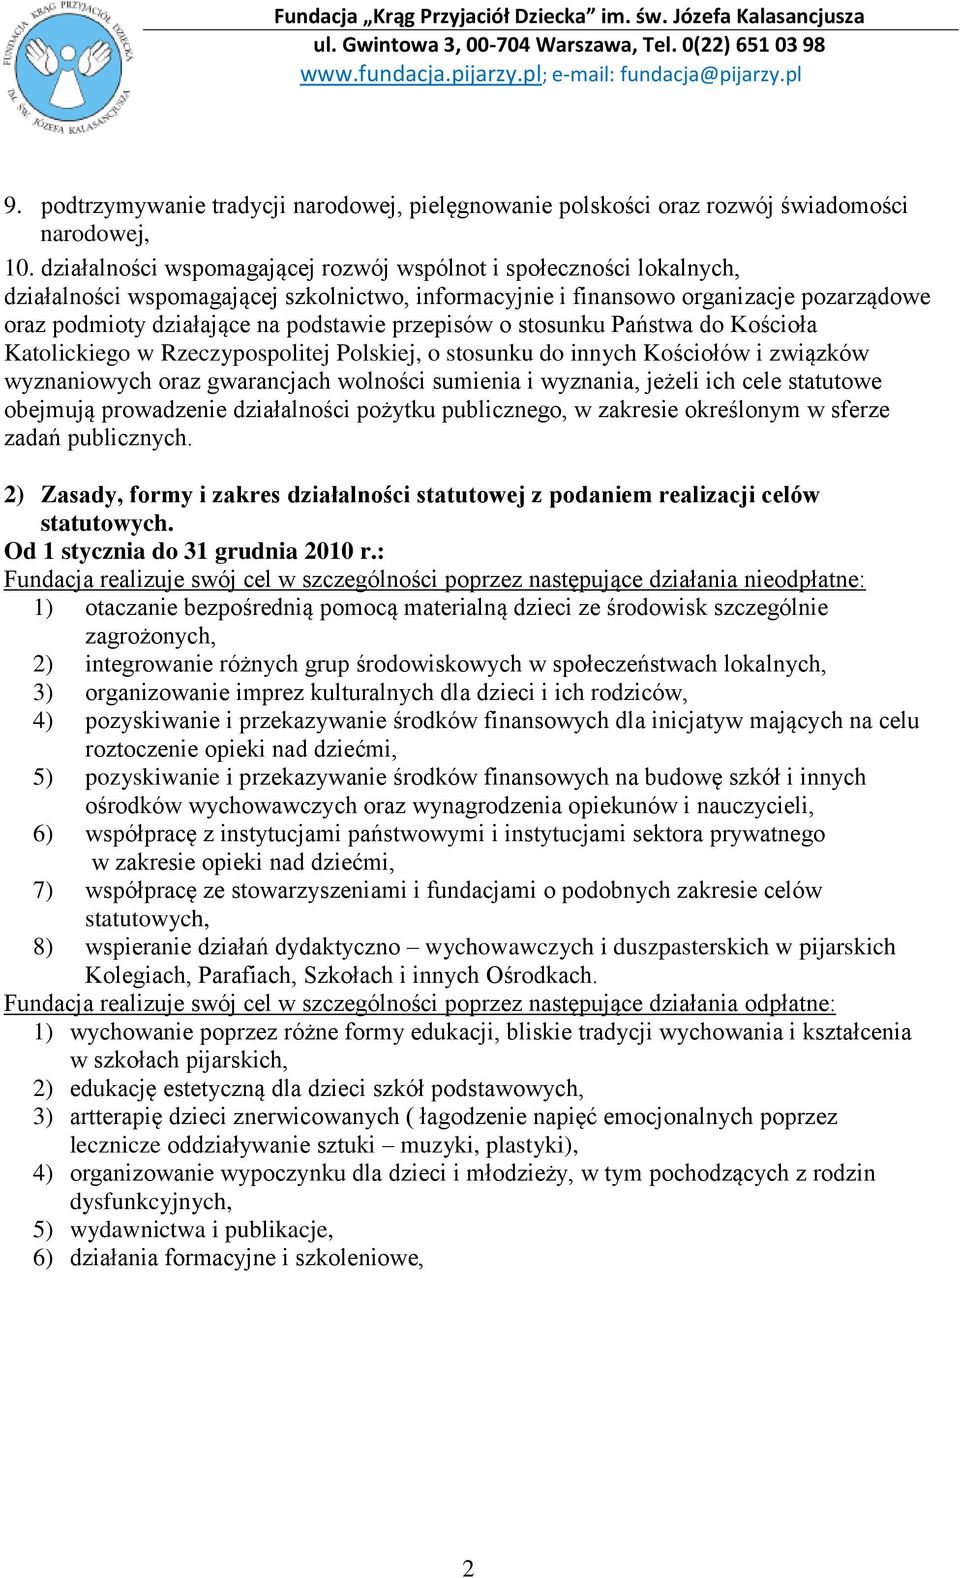 przepisów o stosunku Państwa do Kościoła Katolickiego w Rzeczypospolitej Polskiej, o stosunku do innych Kościołów i związków wyznaniowych oraz gwarancjach wolności sumienia i wyznania, jeżeli ich